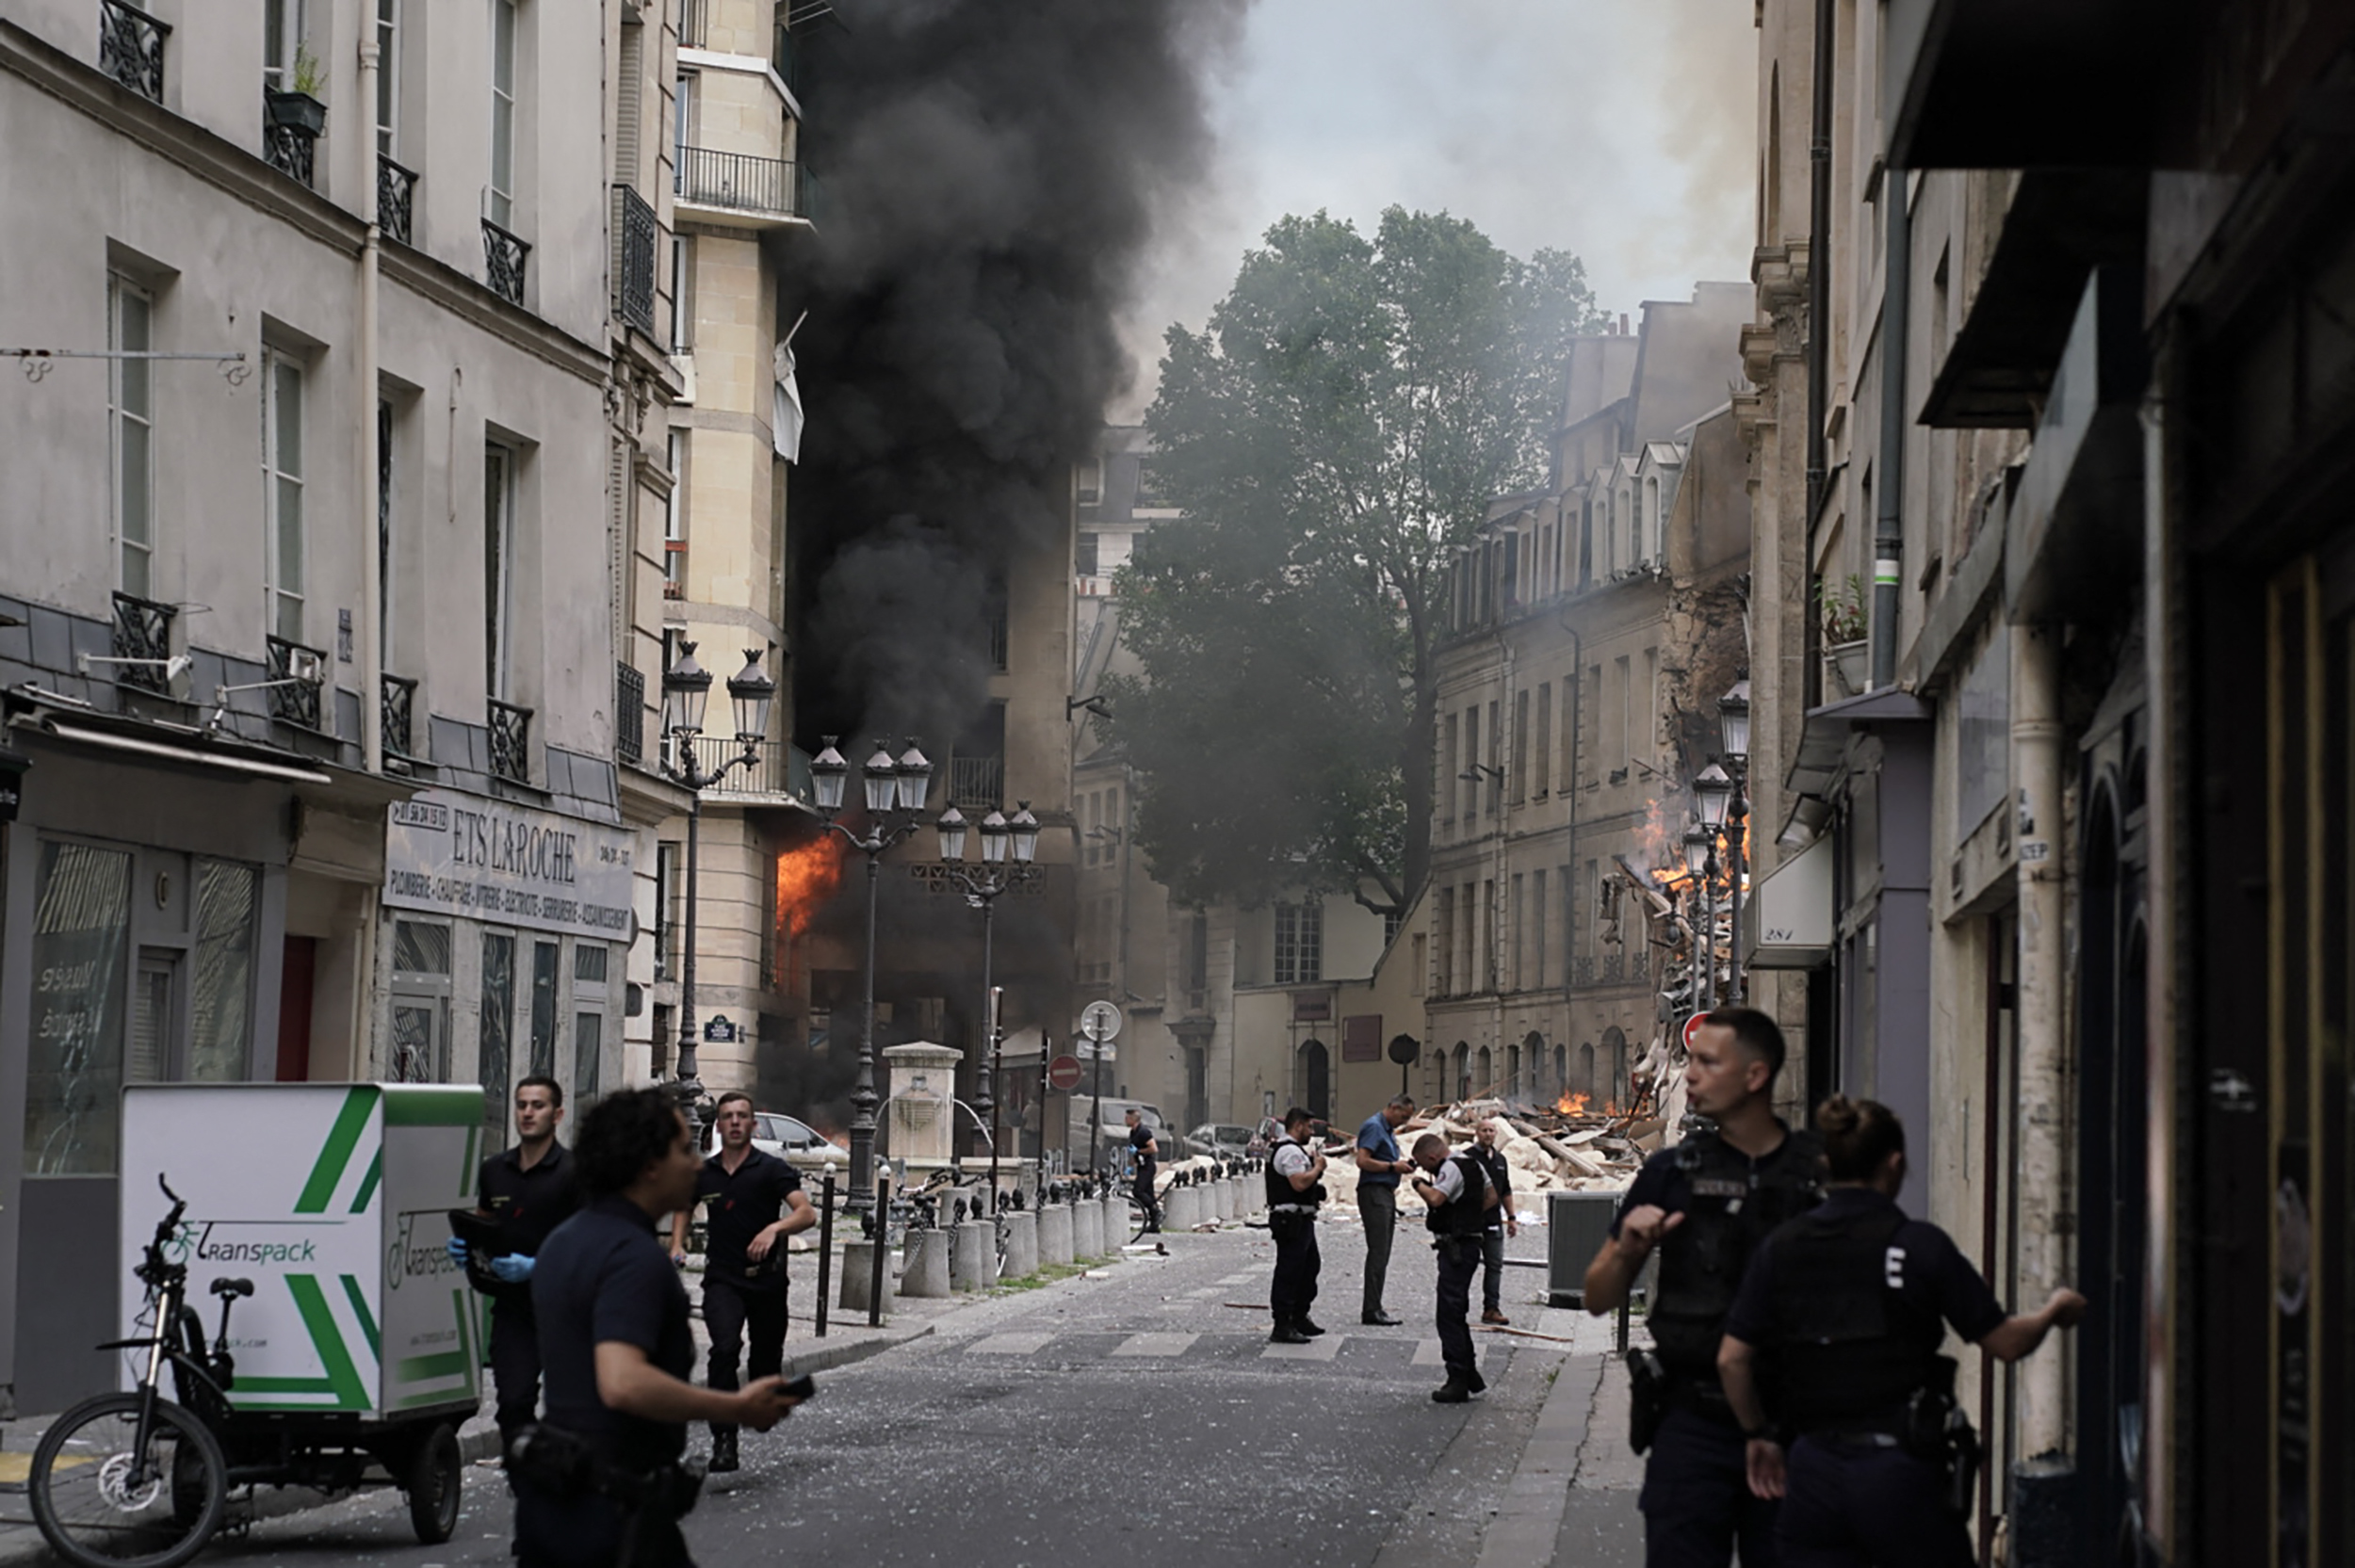 La intervención de emergencia estaba en marcha en la calle Saint Jacques, cerca del hospital Val de Grâce (ABDULMONAM EASSA / AFP)